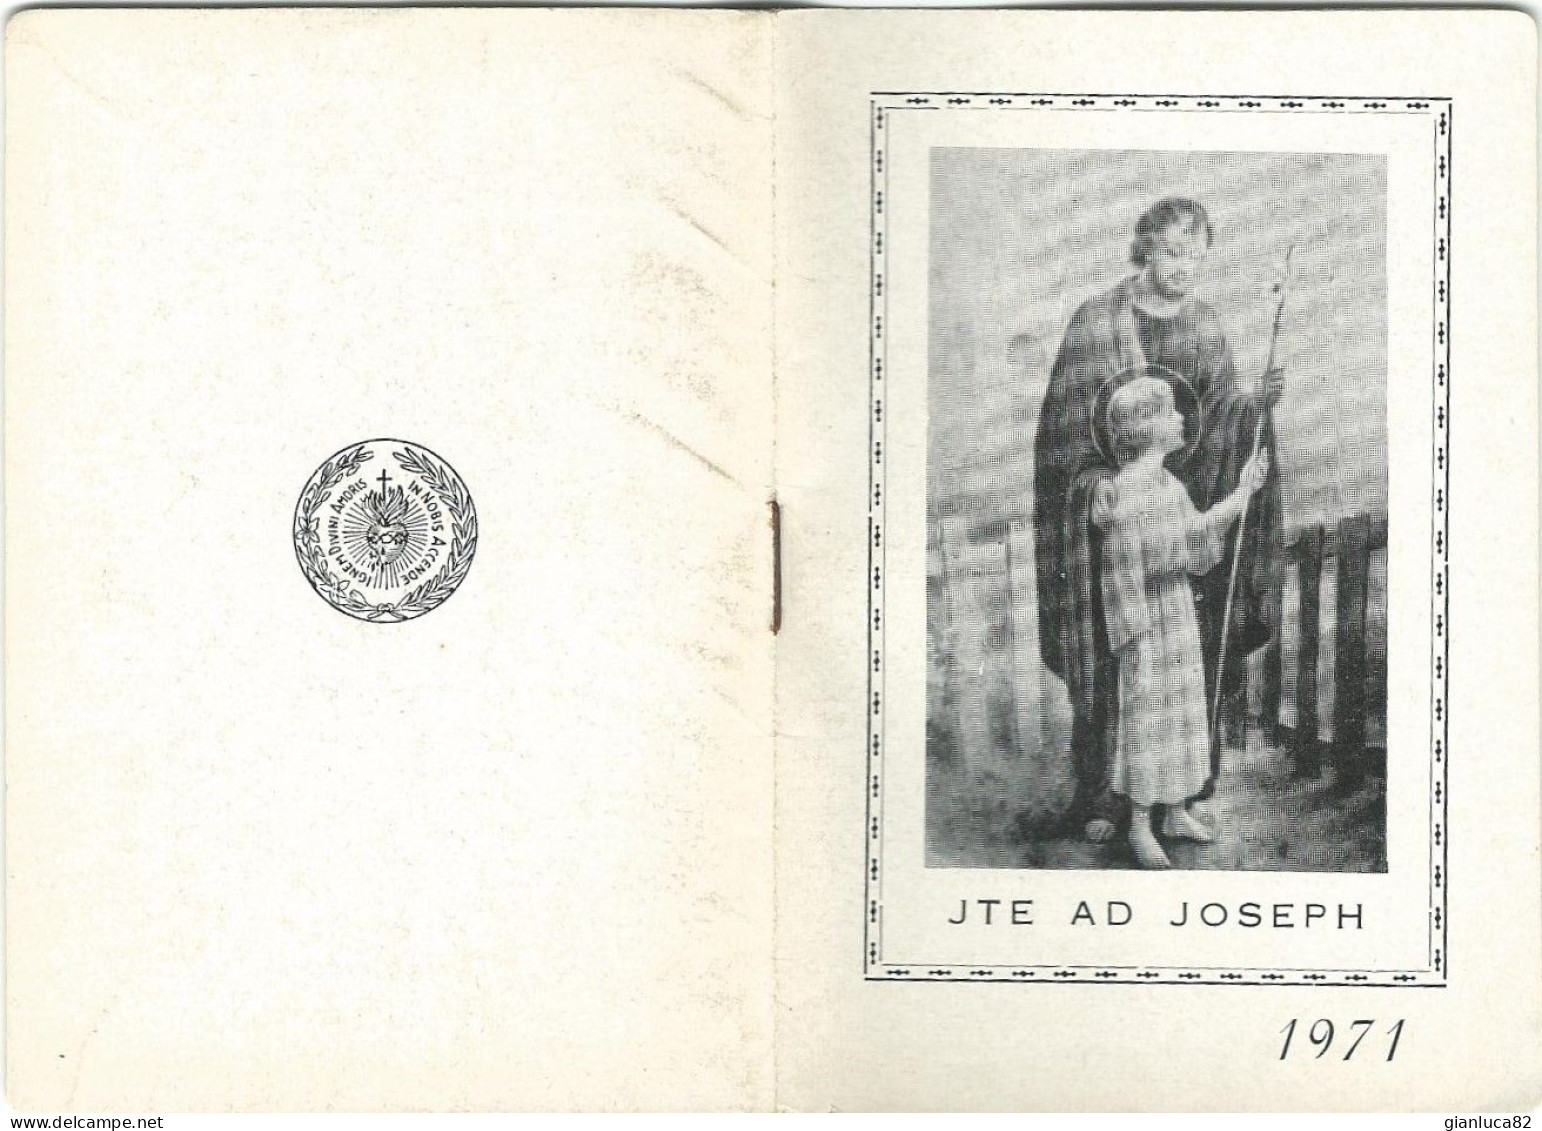 Lotto n.5 Calendarietti Jte ad Joseph Opera Divino Amore Napoli 1953,1954,1963,1971,1972 Come da foto 12,0 x 8,5 cm